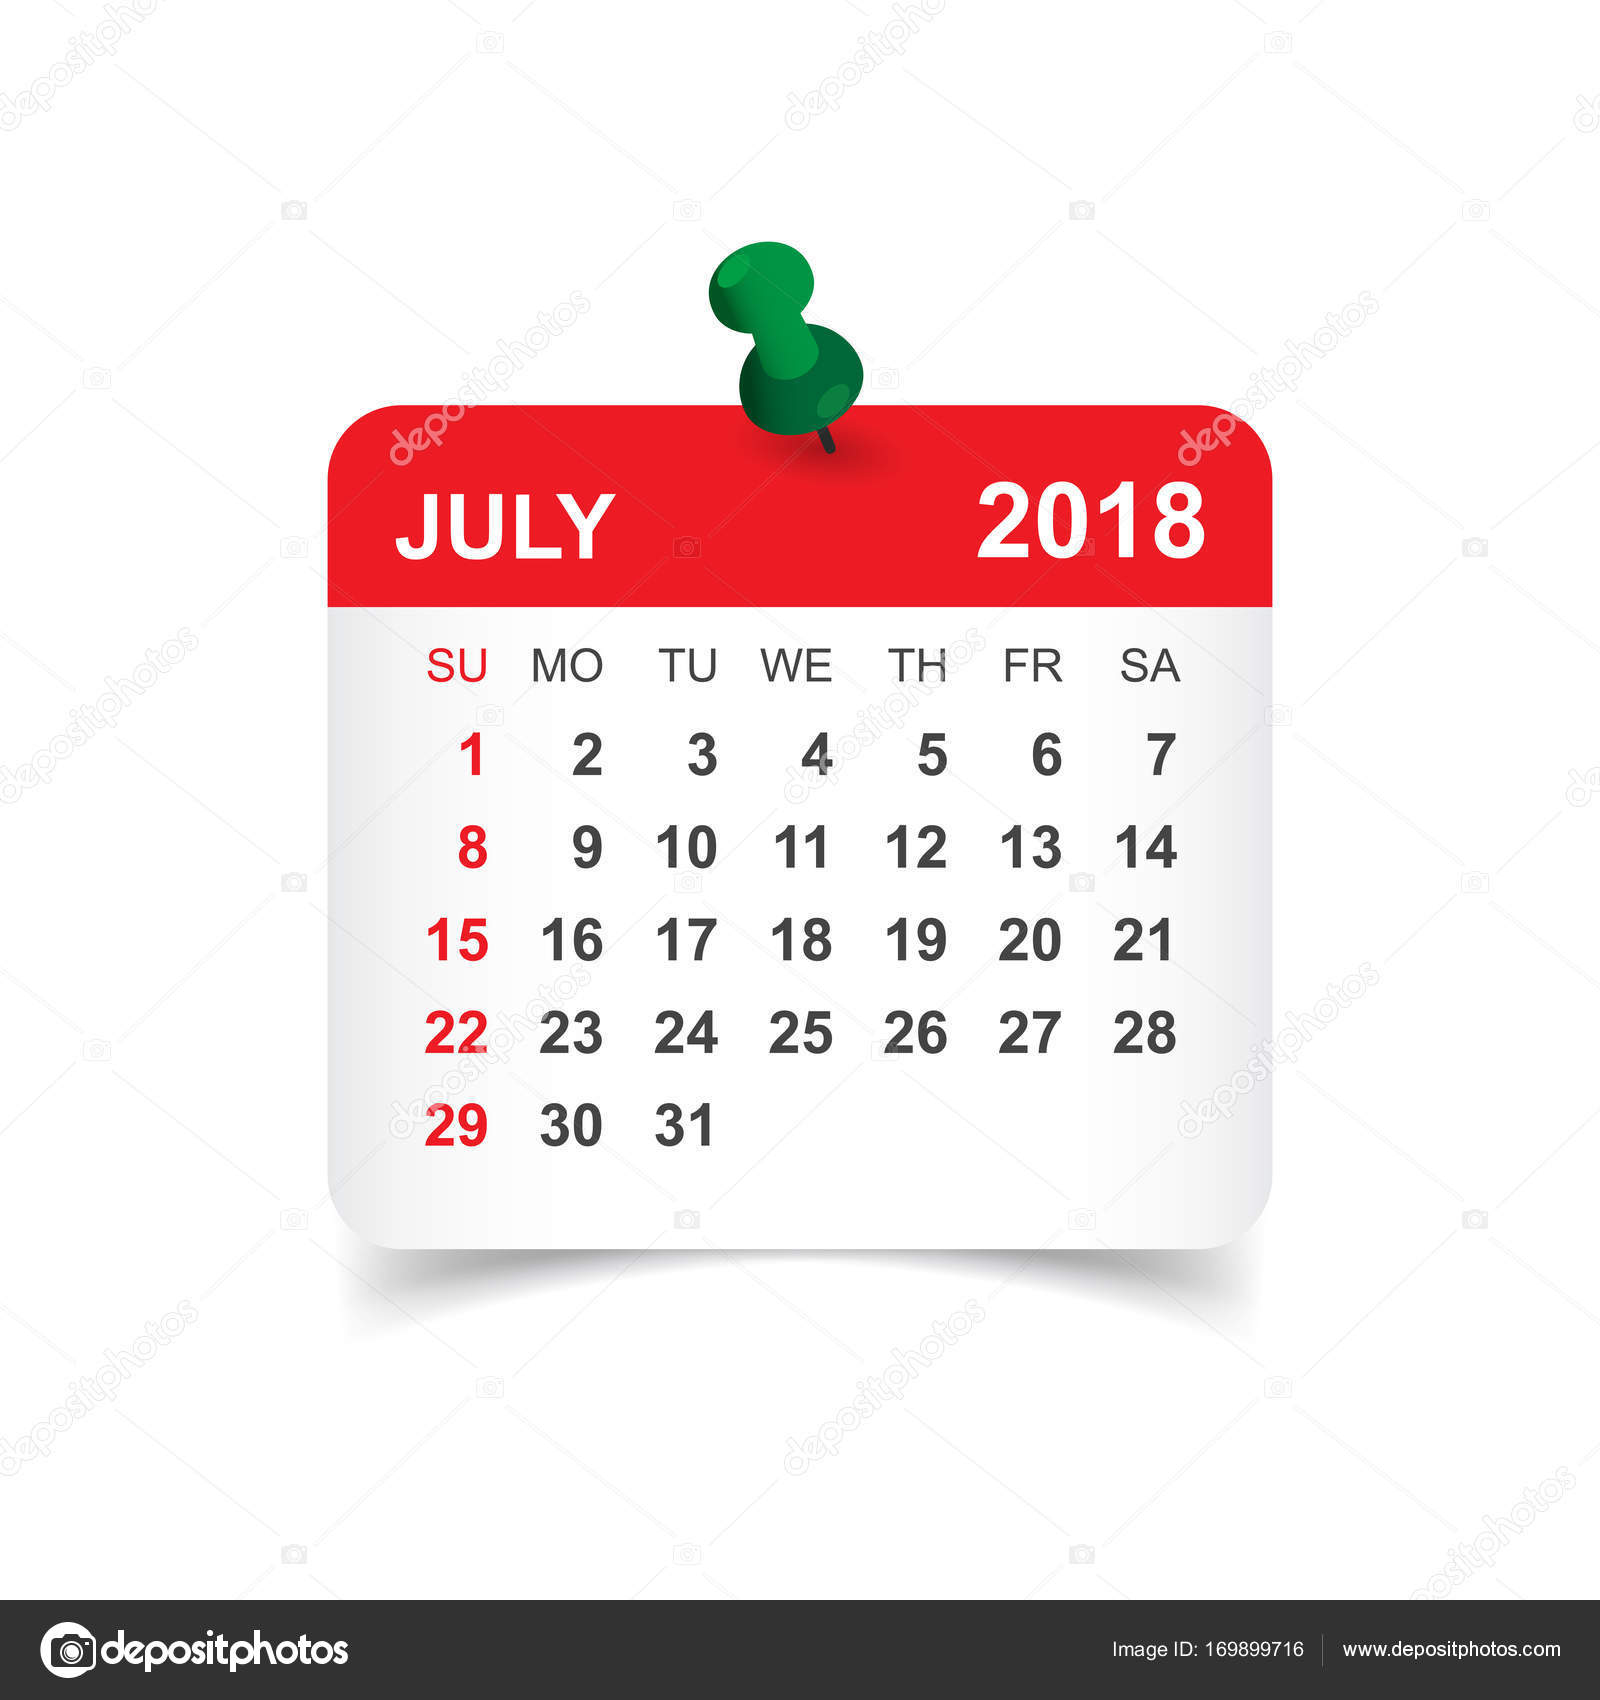 printable-july-2018-calendar-templates-123calendars-com